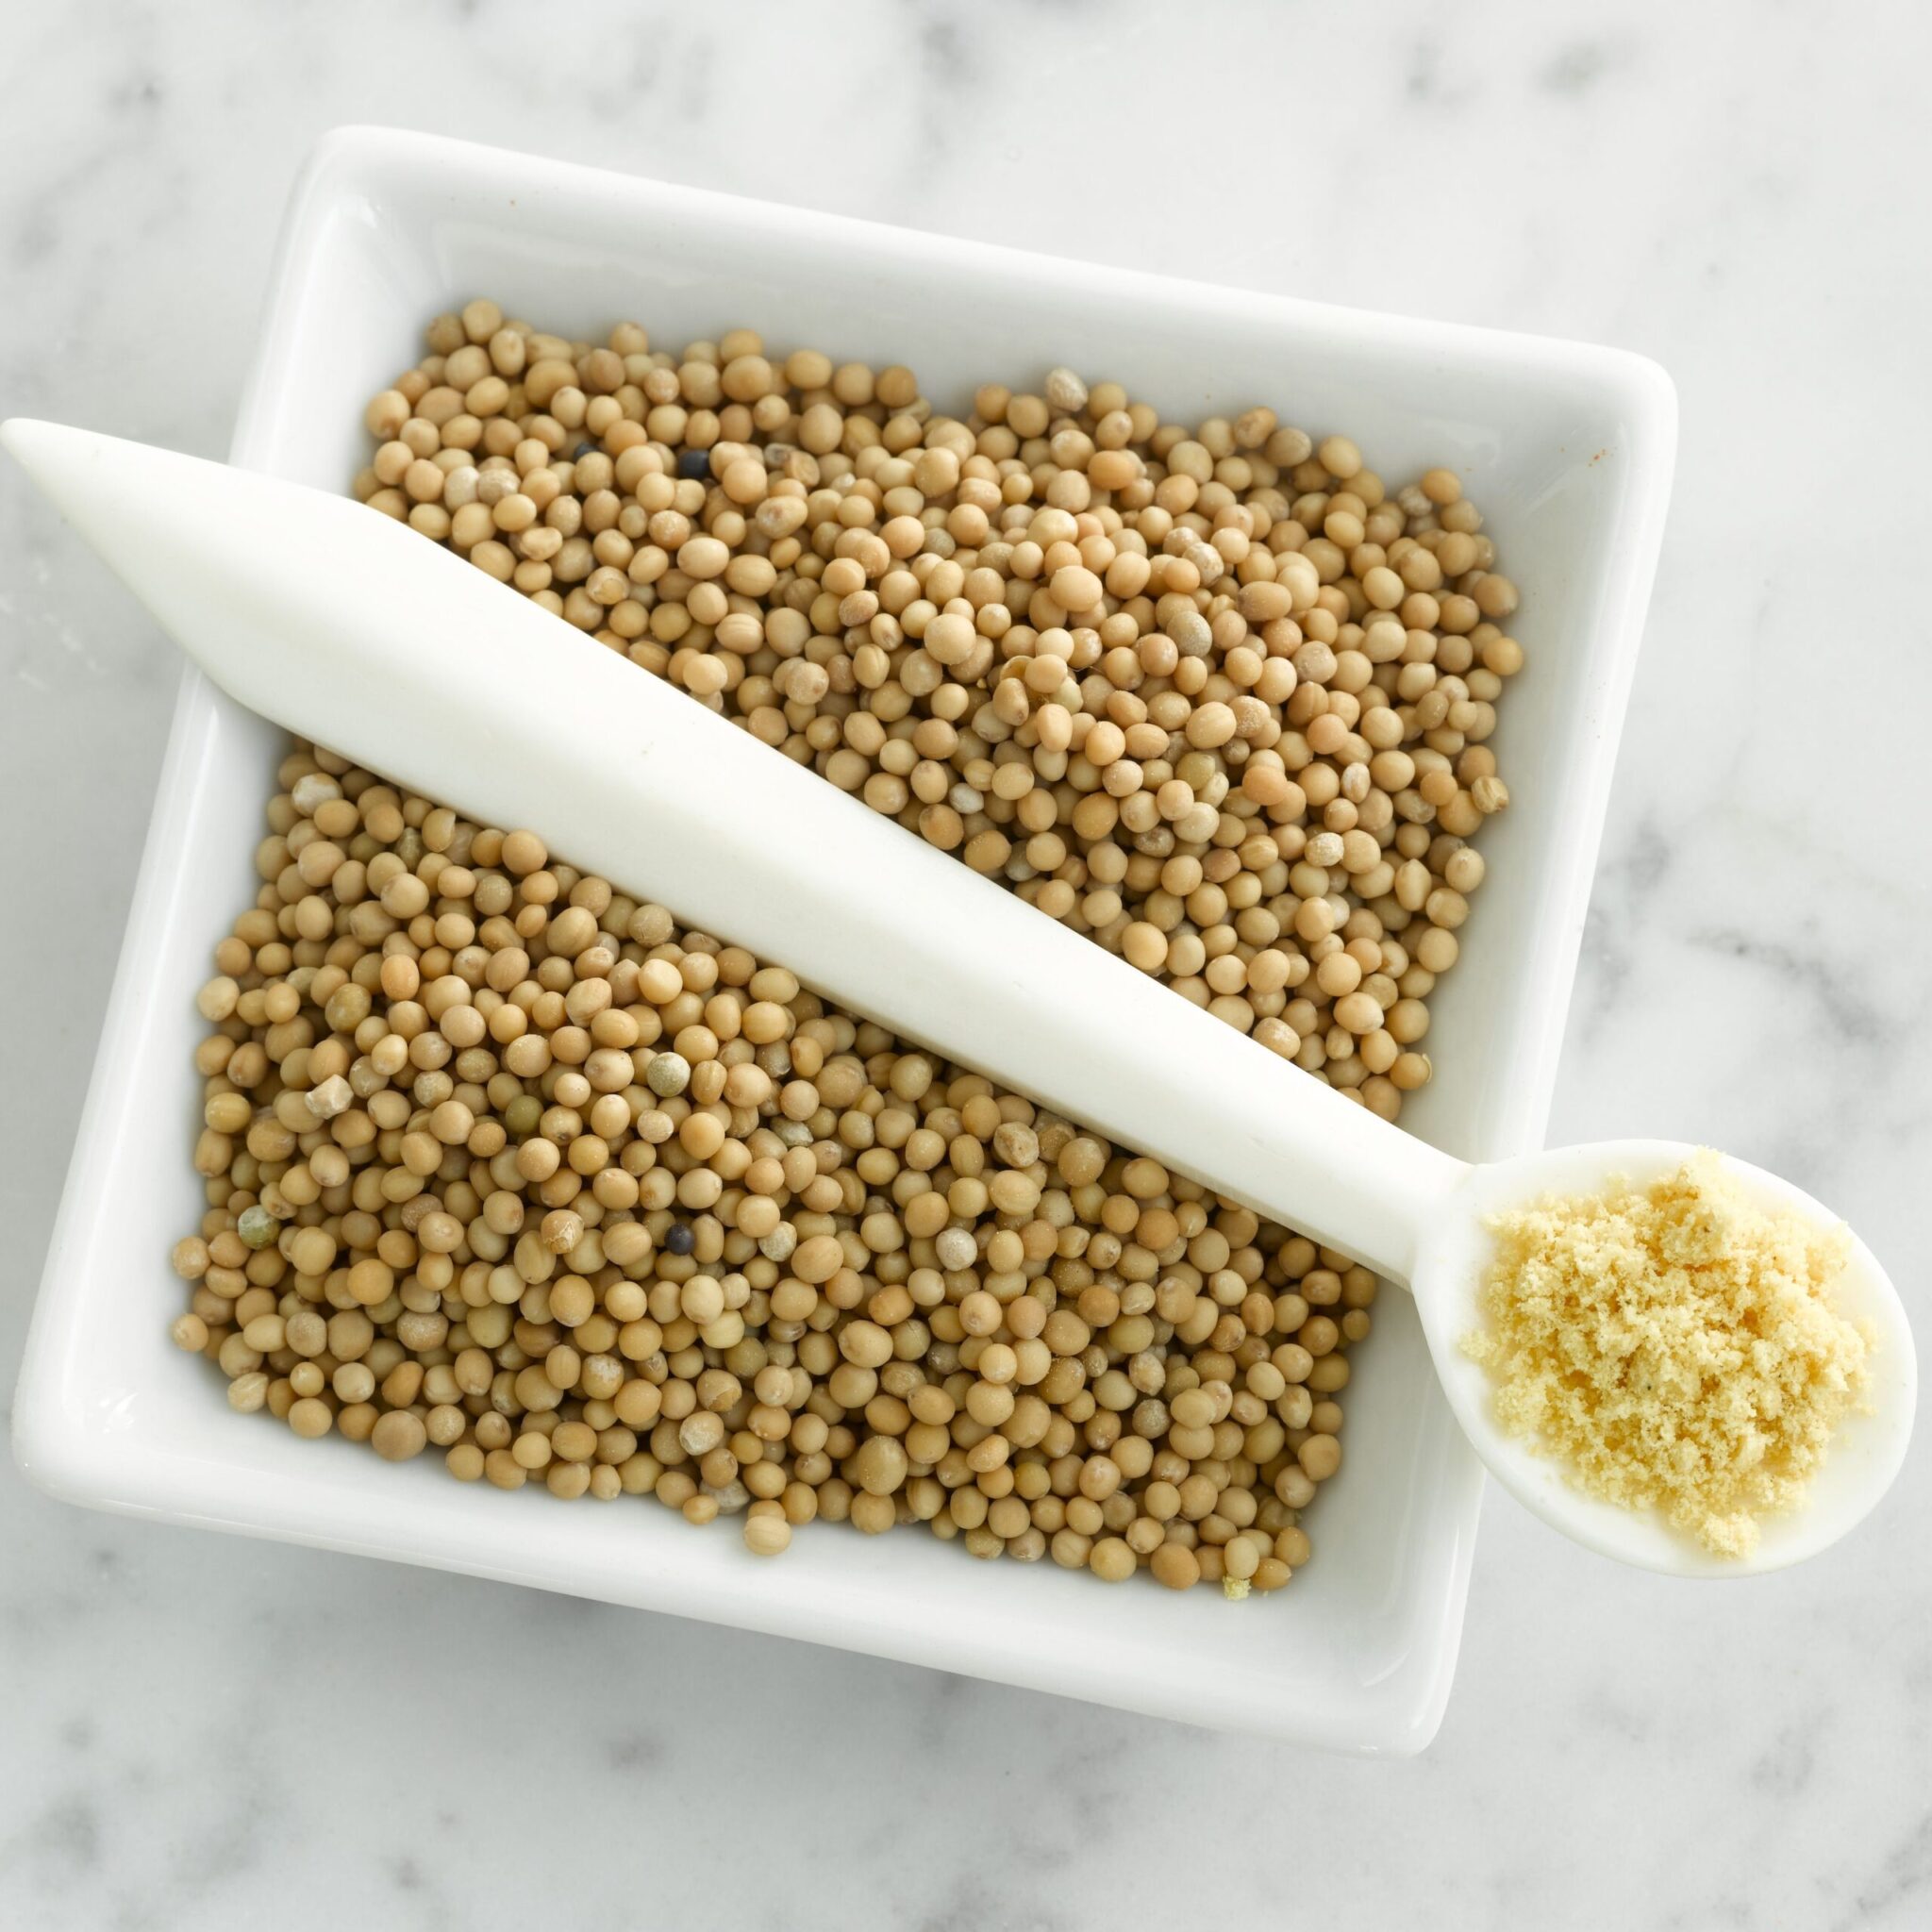 Mustard Seeds: